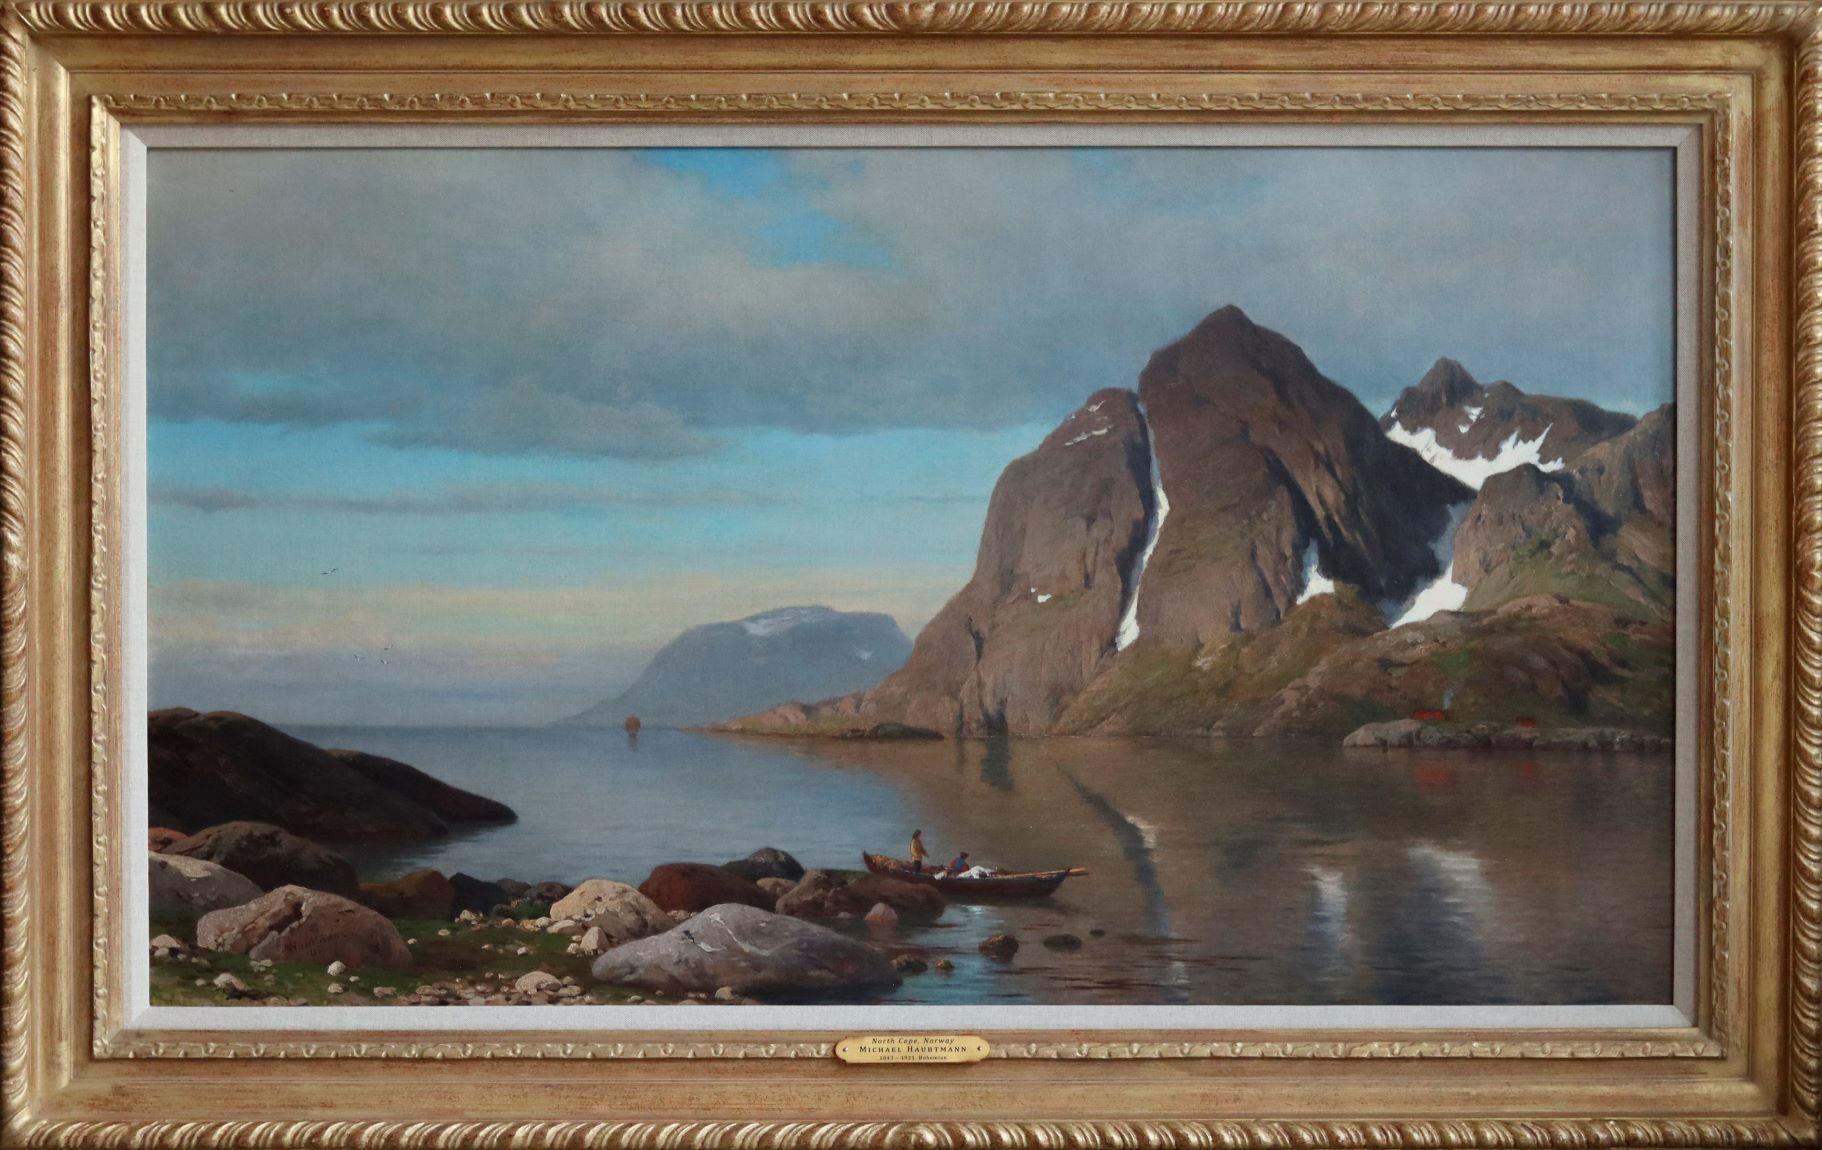 Landscape Painting Michael Haubtmann - Cape du Nord, Norvège                                                          